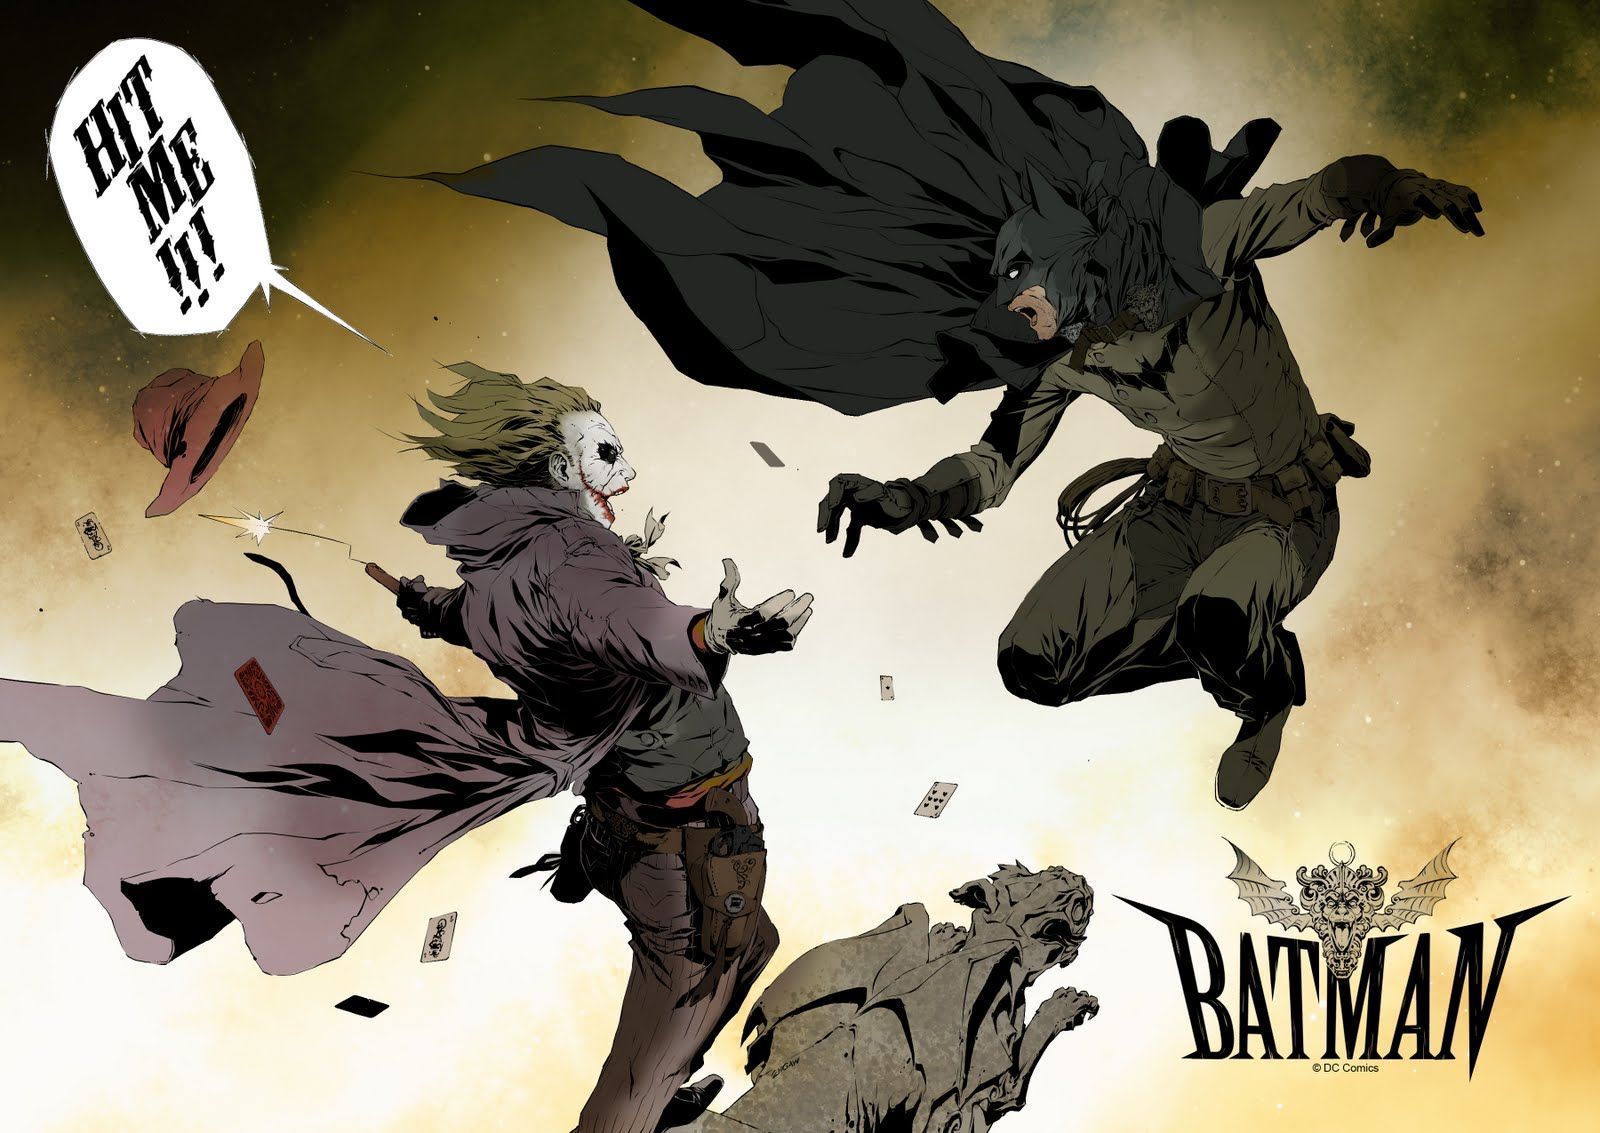 Batman Vs Joker Wallpaper | 1600x1133 | ID:45252